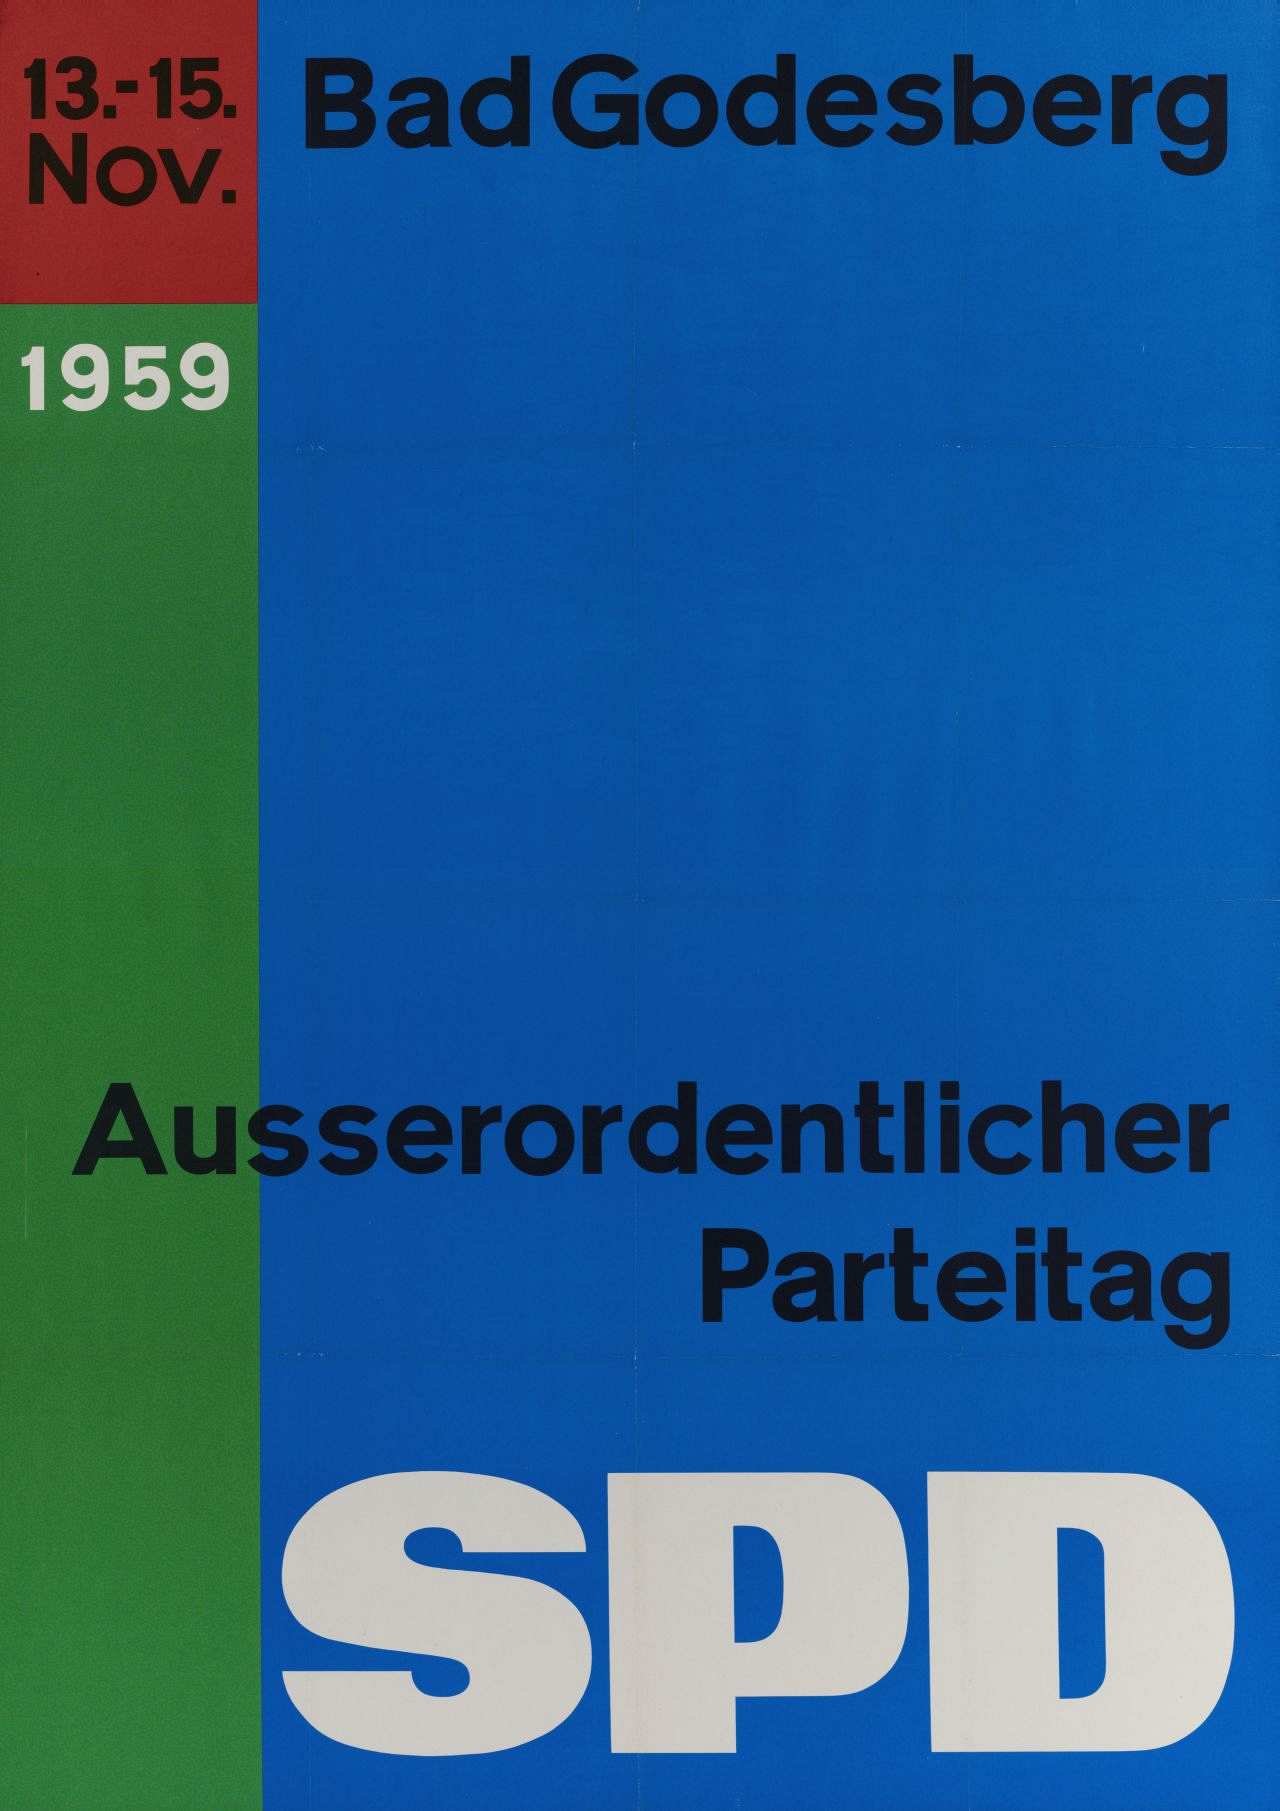 Das Plakat ist aufgeteilt in drei verschieden große Farbfelder in blau, grün und rot. In schwarzer und weißer Schrift folgender Text: 13.-15. Nov. 1959 Bad Godesberg Ausserordentlicher Parteitag SPD.